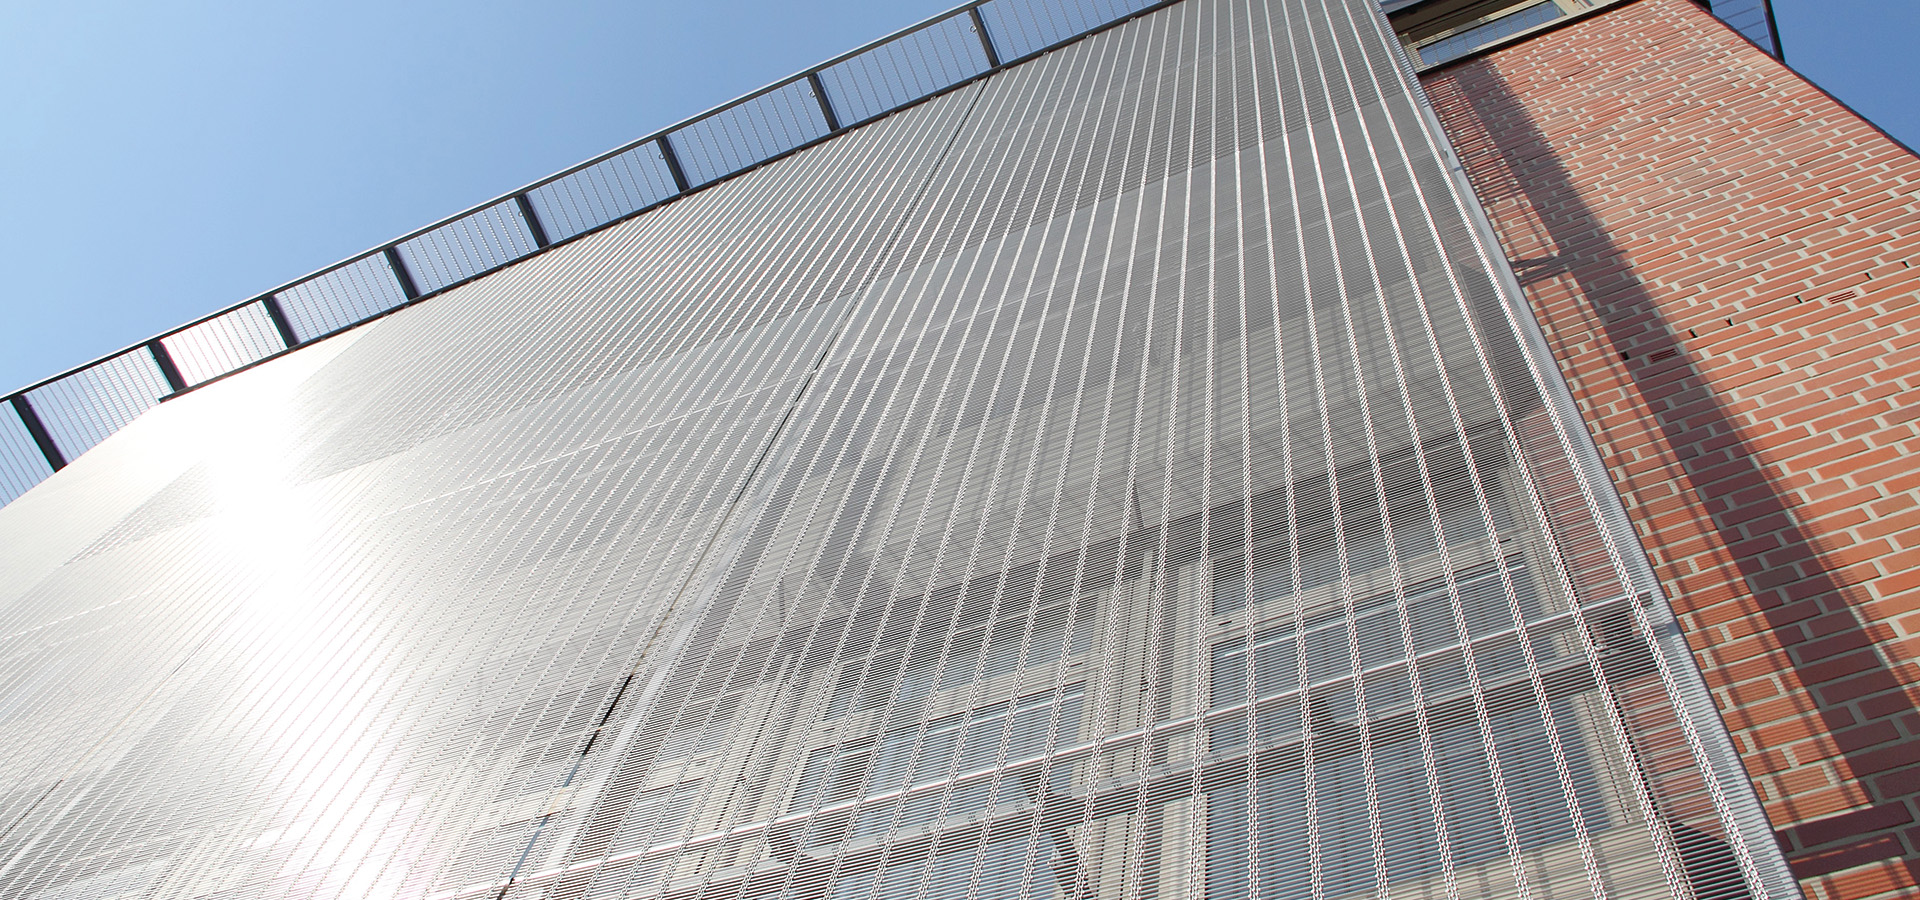 HAVER Architekturgewebe bietet Ihnen als geregeltes und zugelassenes Bauprodukt durch das Deutsche Institut für Bautechnik klare Vorteile bei der planmäßigen Umsetzung von Metallgewebe-Fassaden und Wandverkleidungen, sowie Absturzsicherungen aus Edelstahlgewebe. 